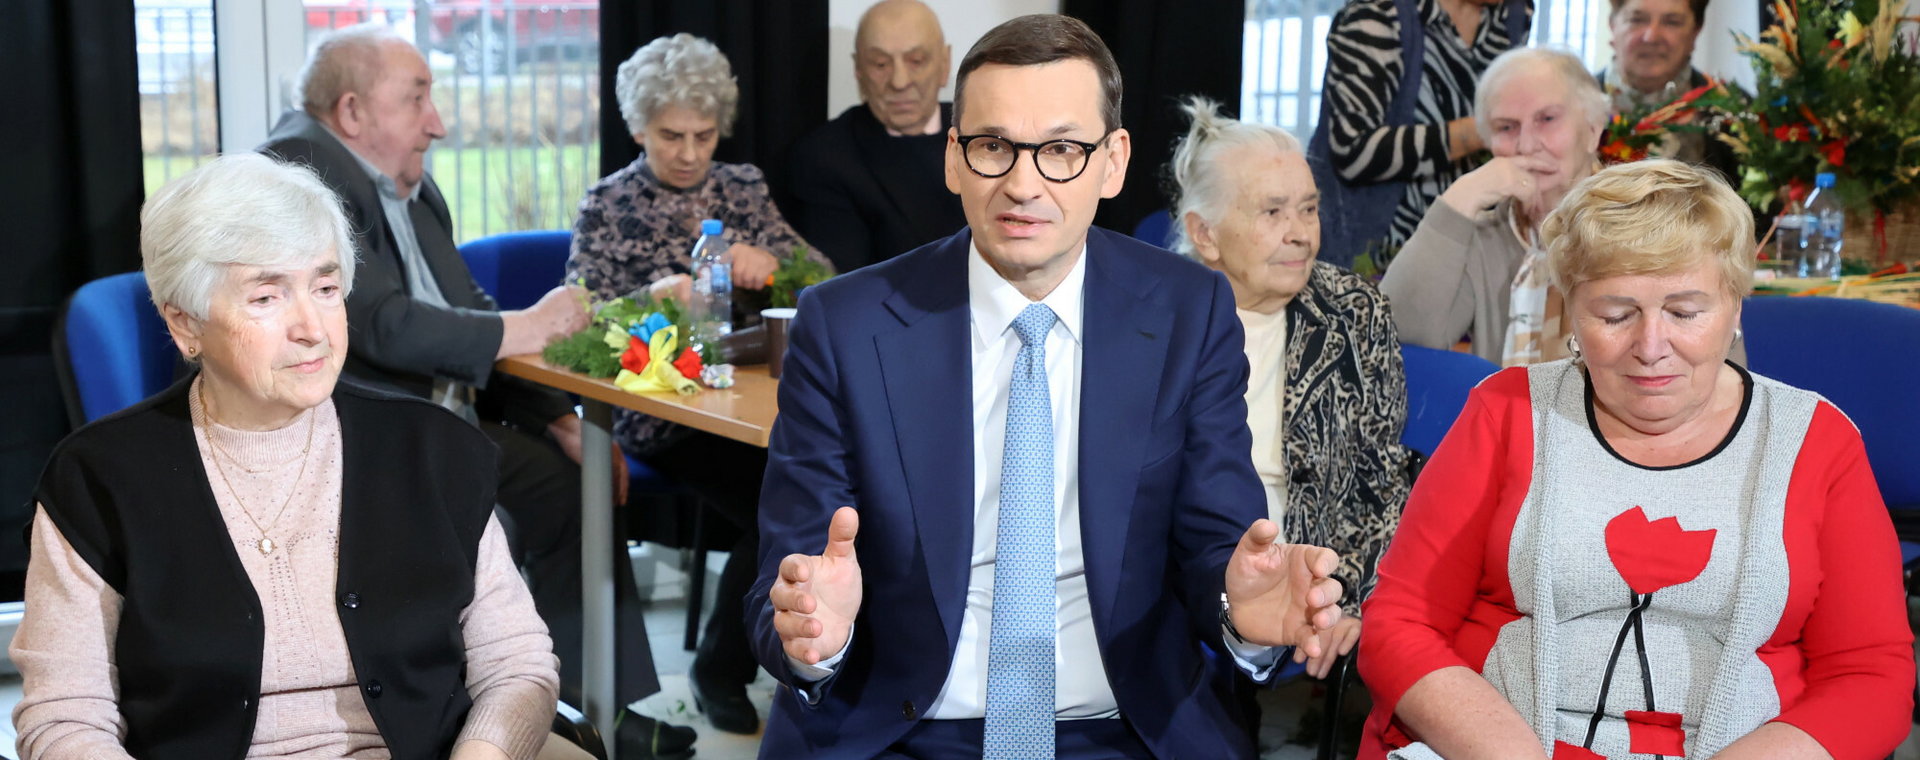 Rząd jest otwarty na negocjacje w sprawie emerytur stażowych. Na zdjęciu premier Mateusz Morawiecki z wizytą w domu seniora w Woli Karczewskiej